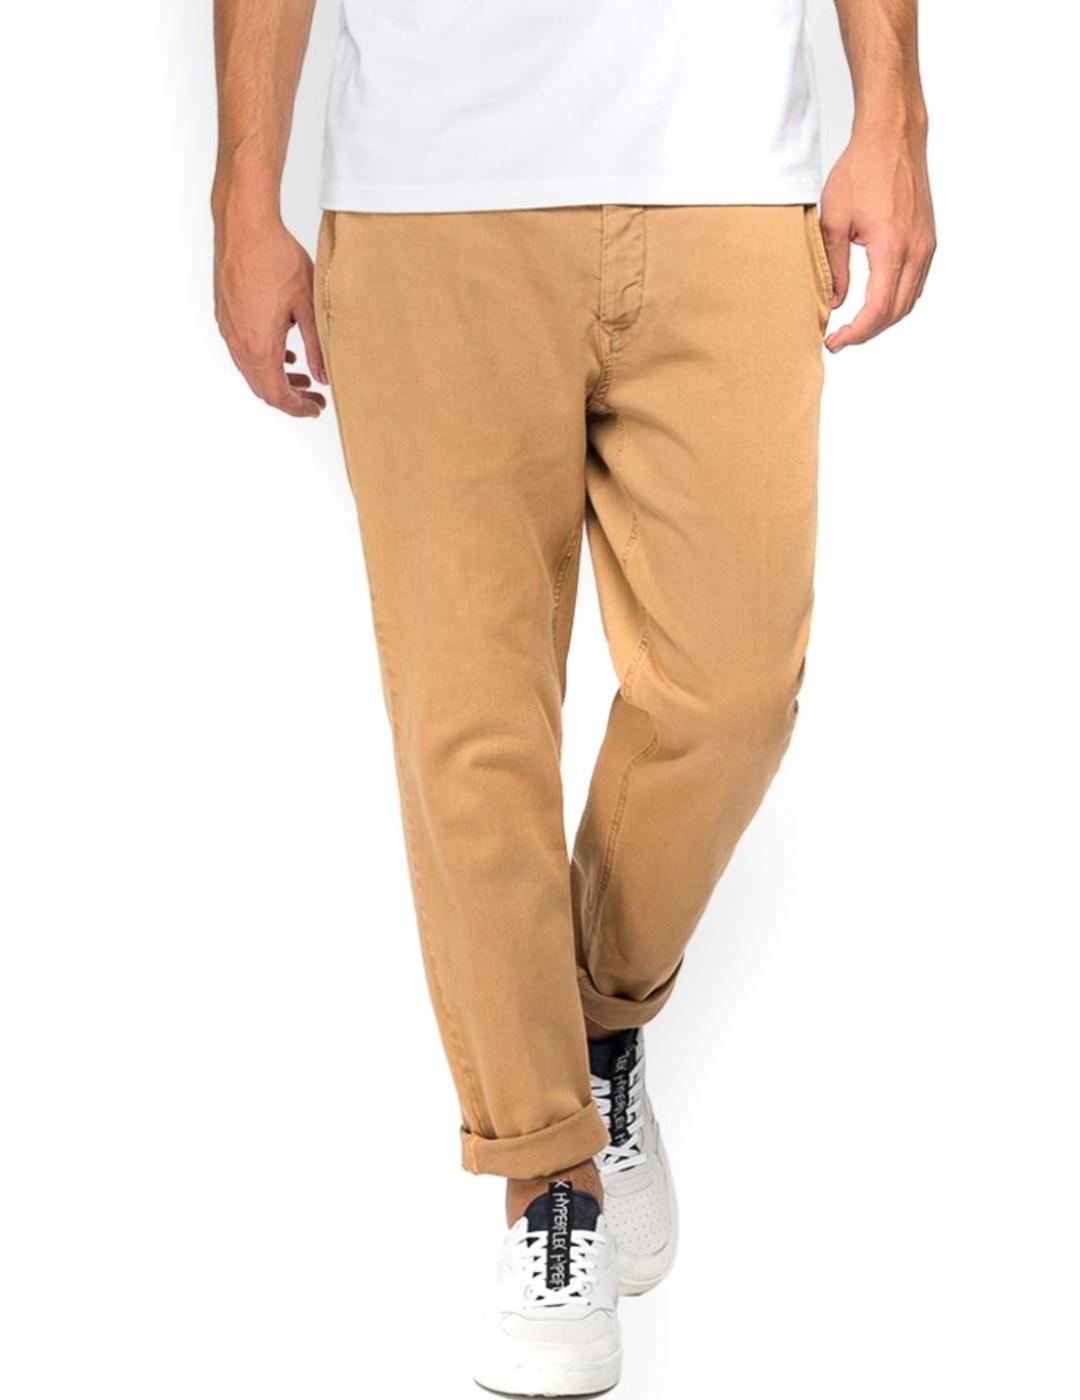 Pantalón Replay Benni chino marrón para hombre-/df01